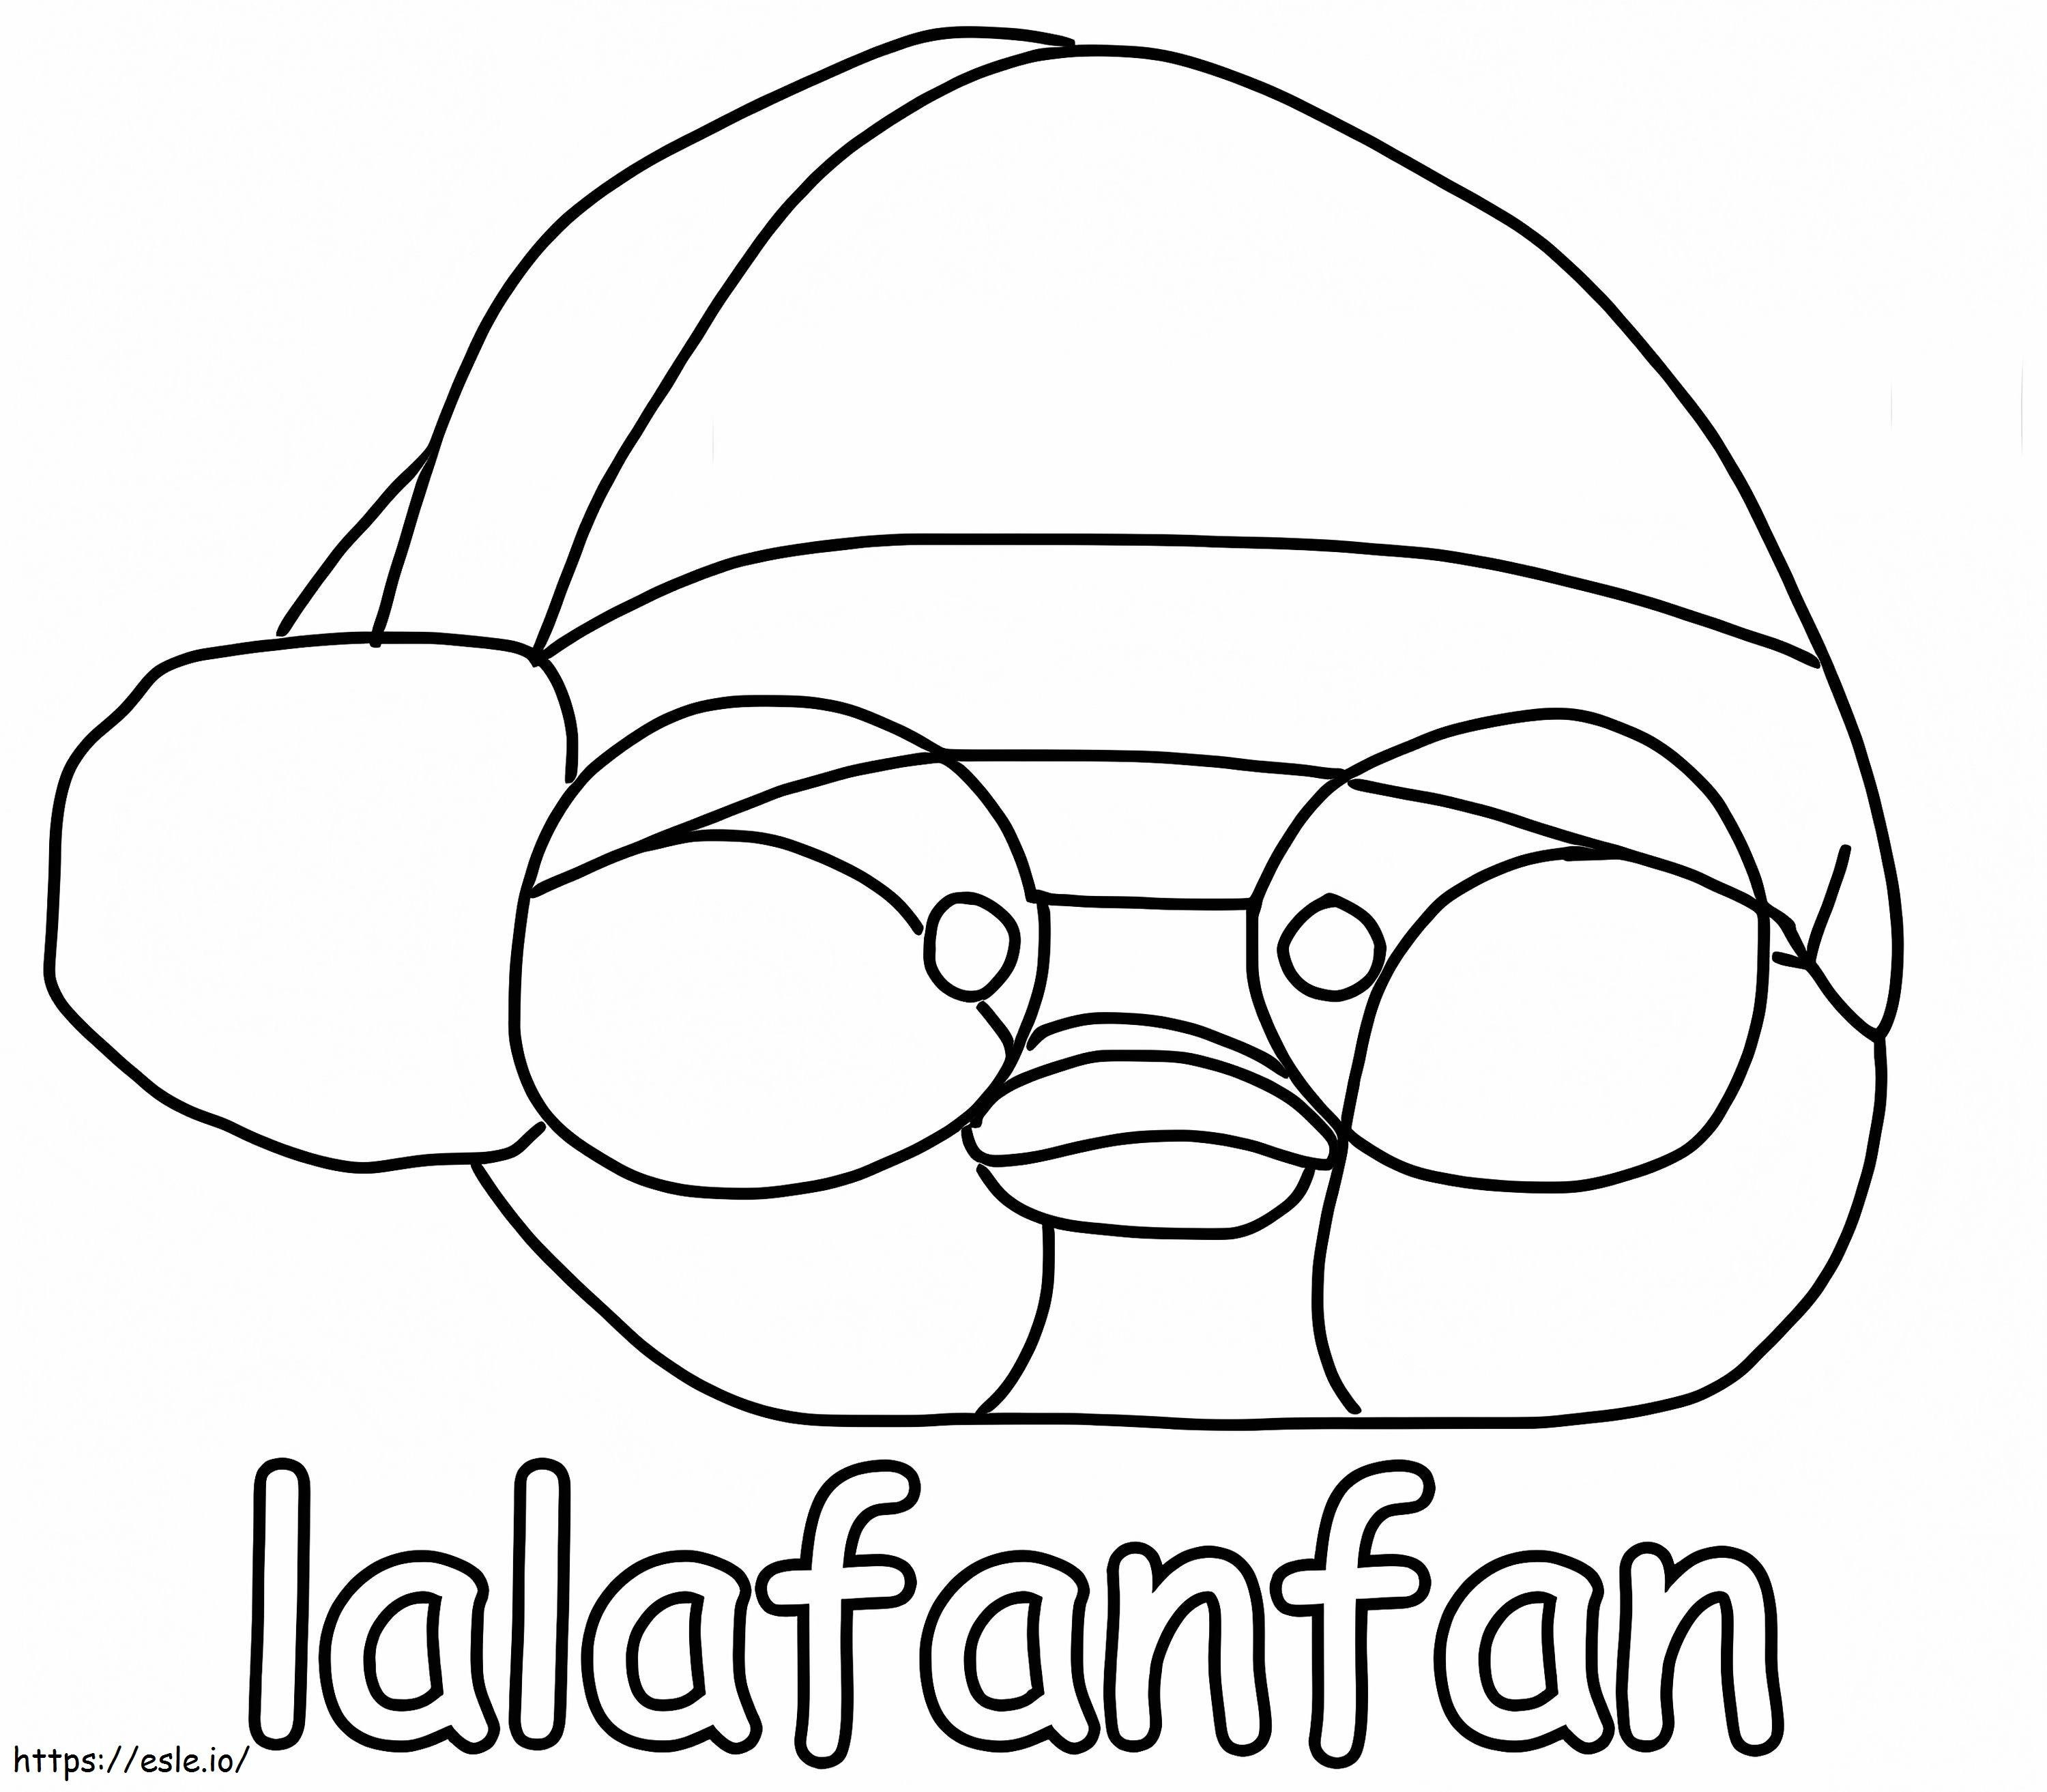 Ücretsiz Lalafanfan boyama